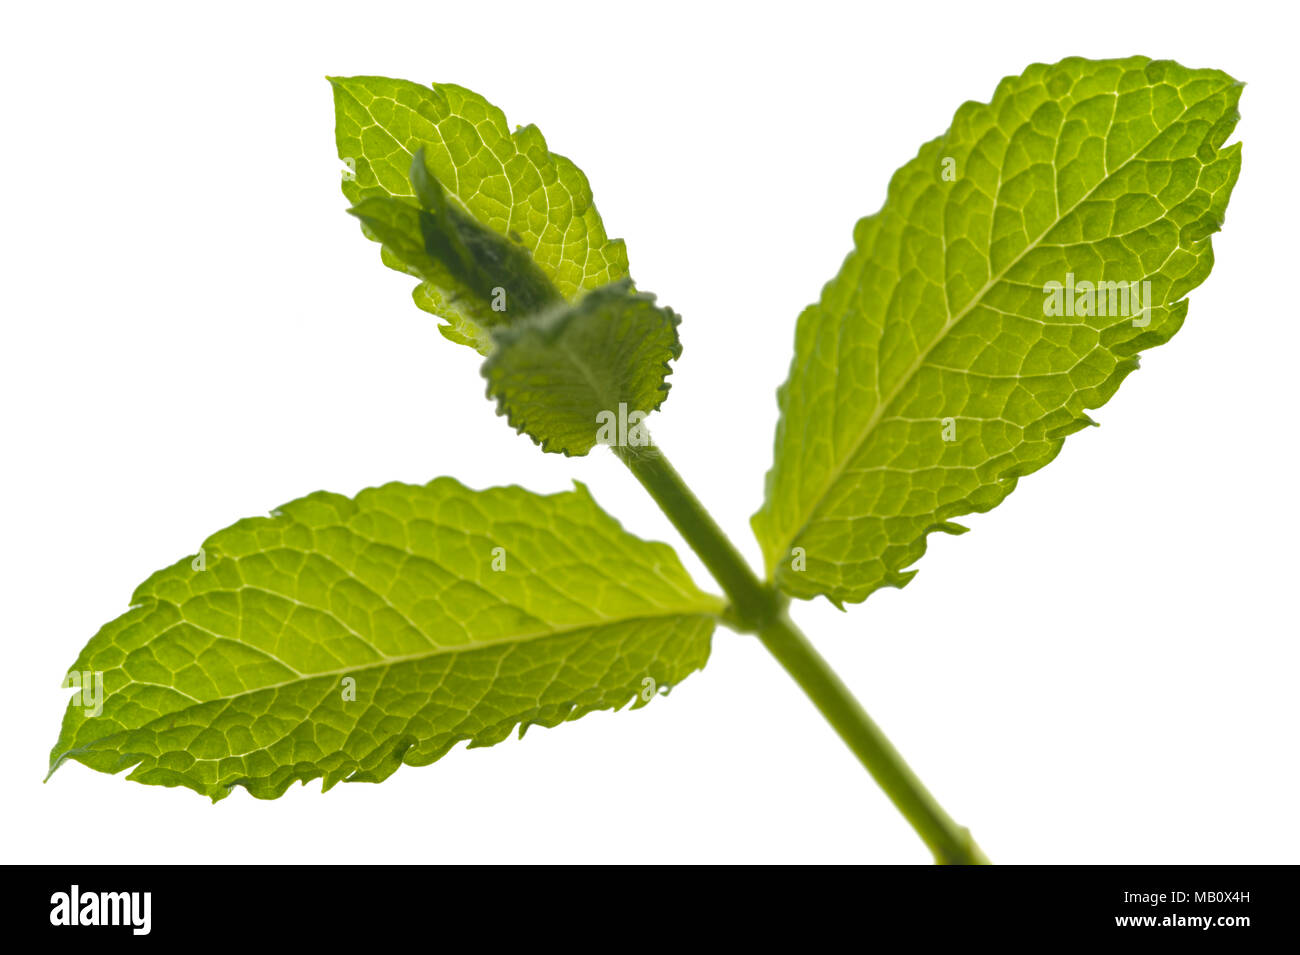 single leaf of lemon balm isolated over white background Stock Photo